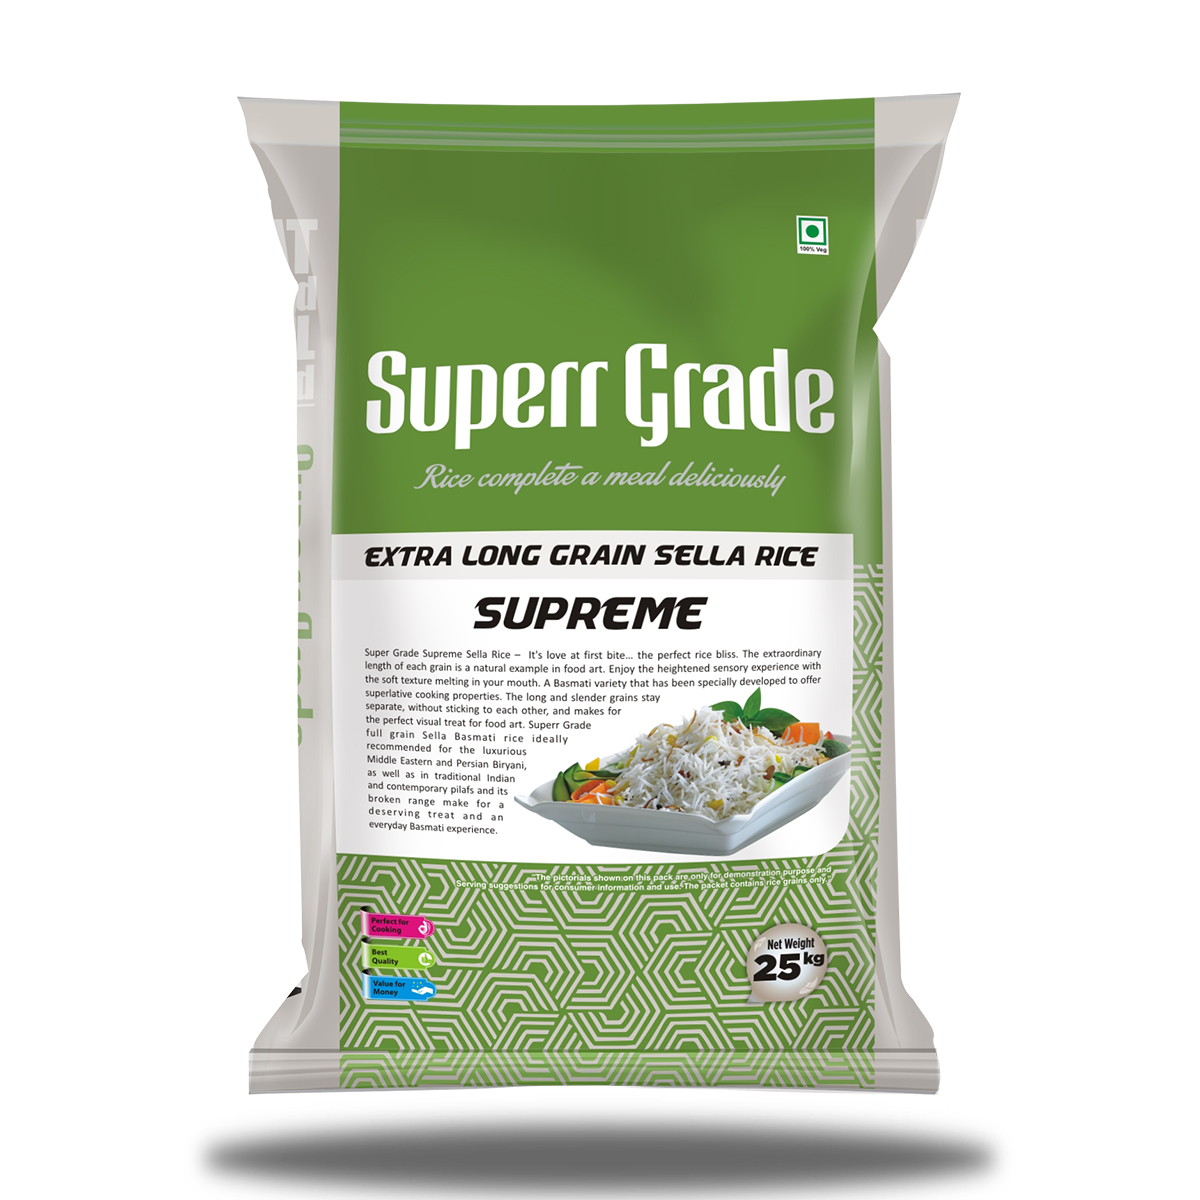 Super Grade Supreme